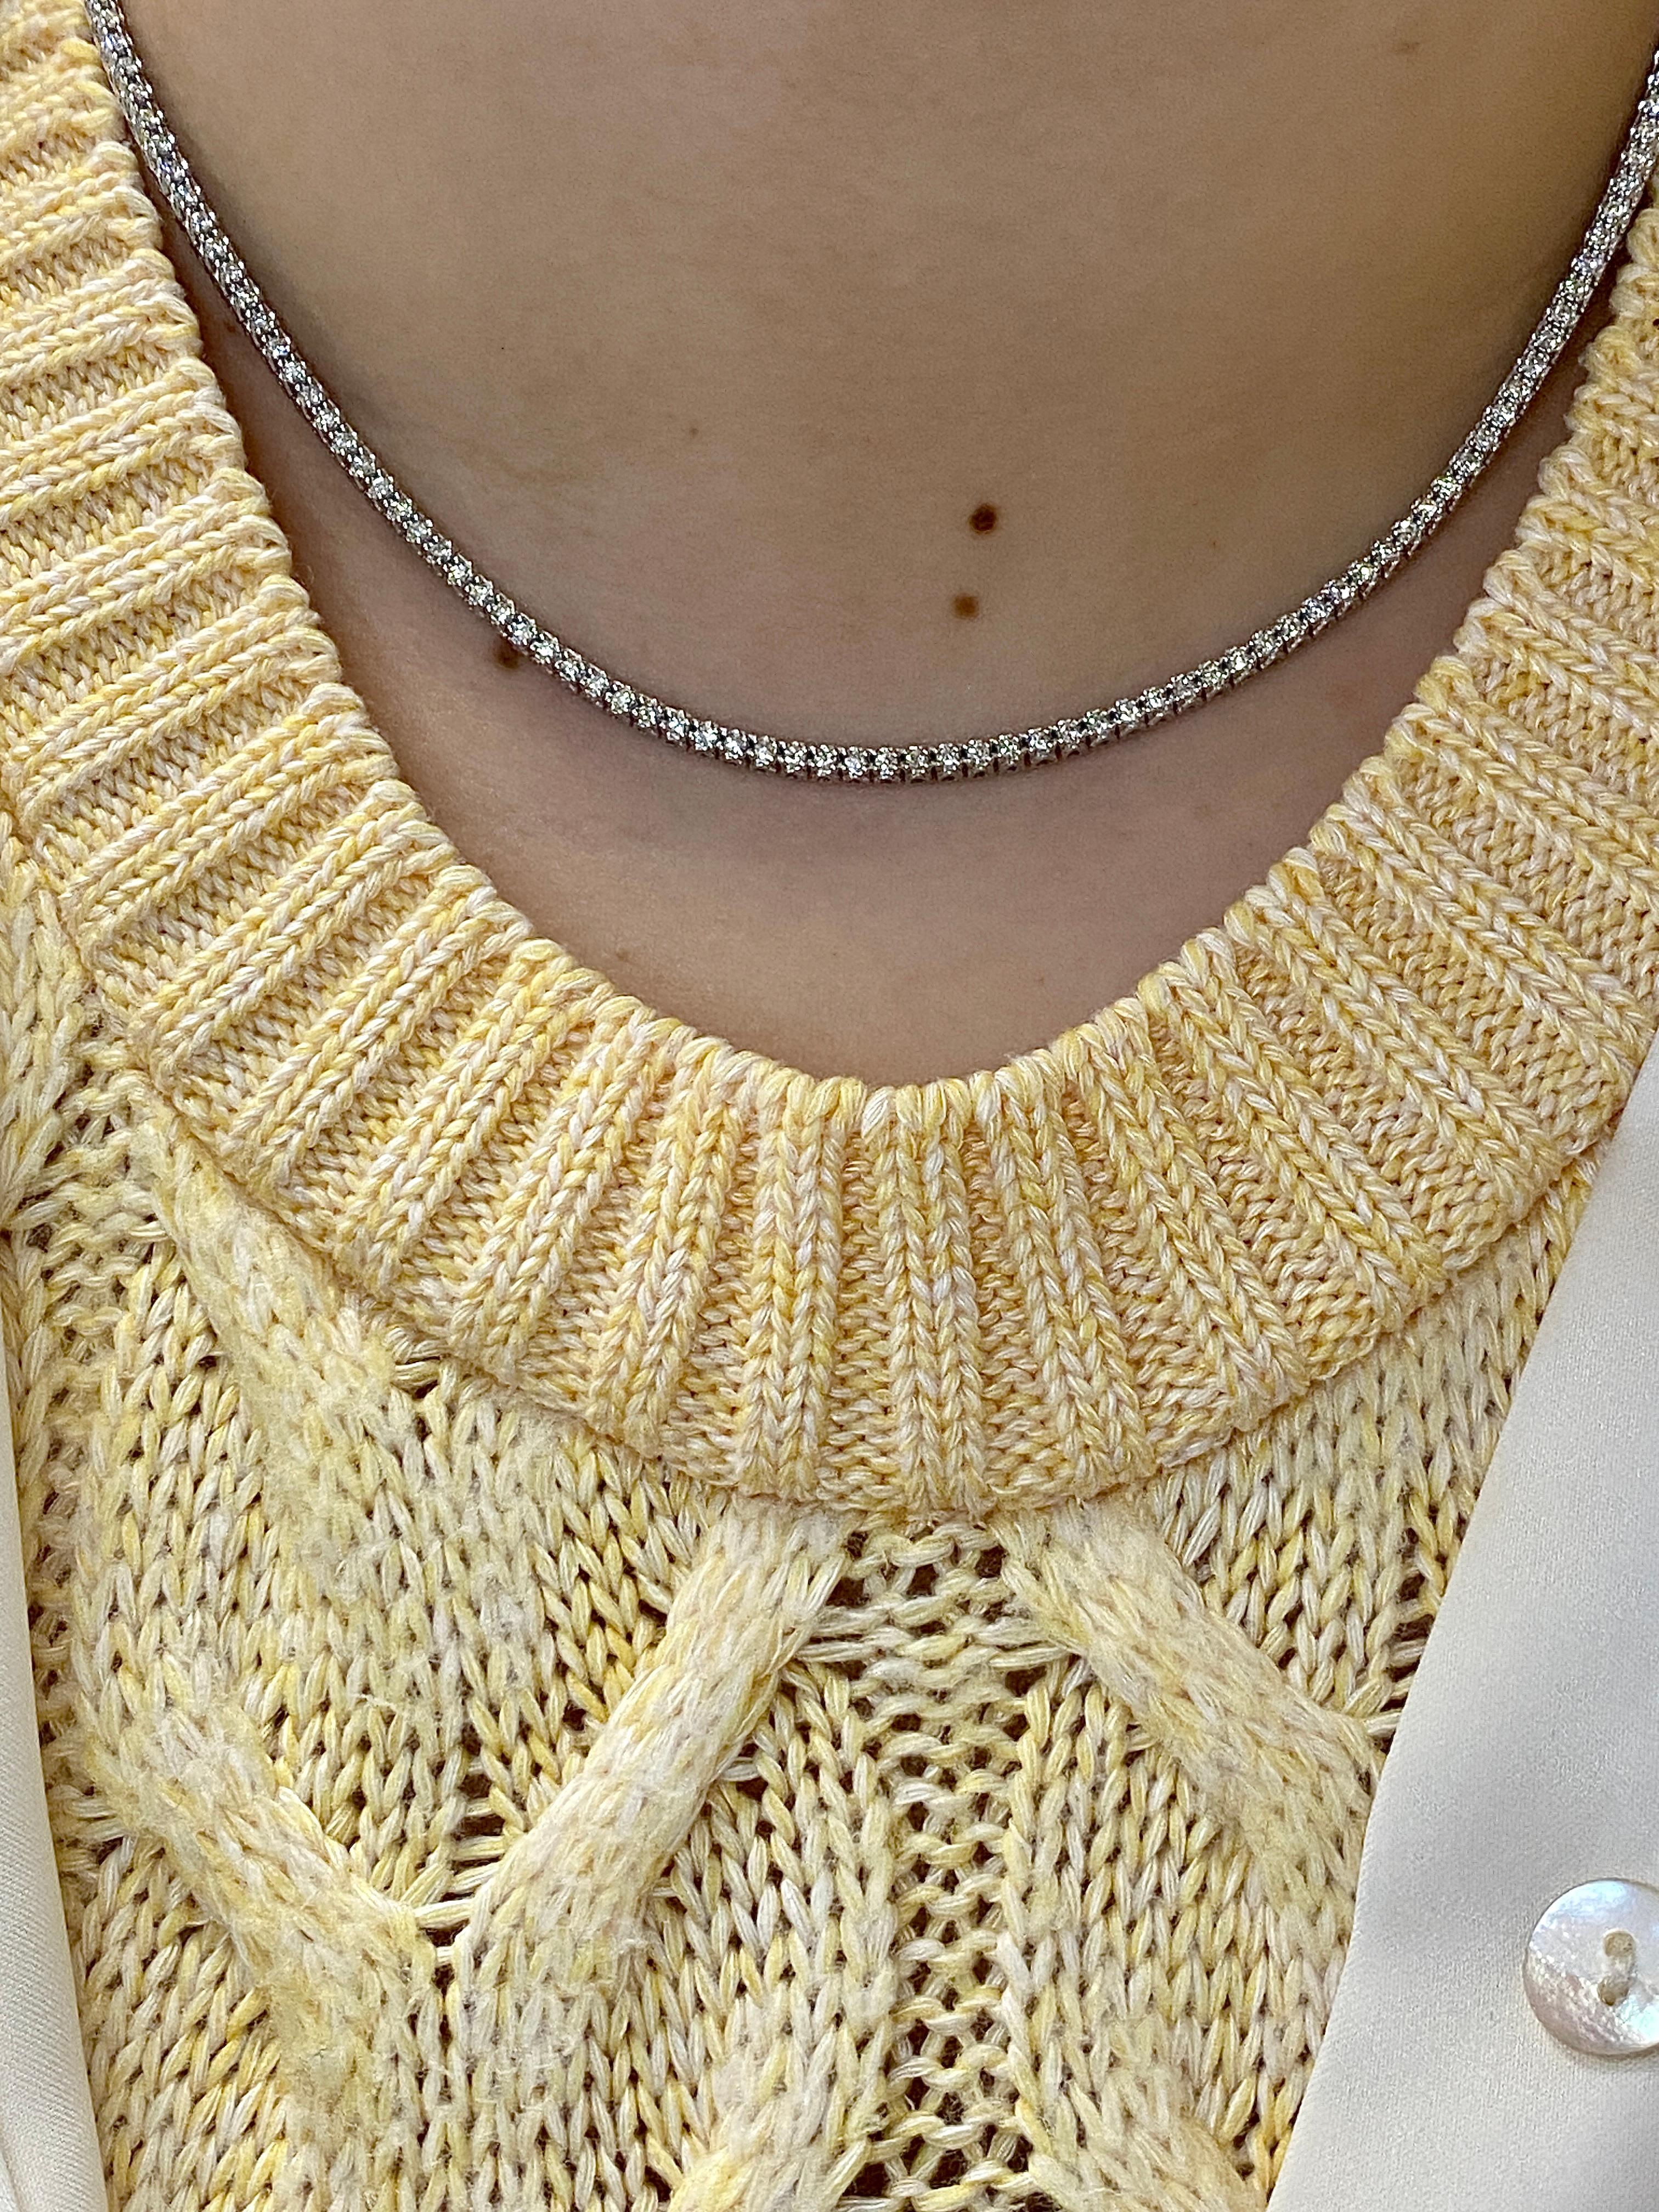 200 carat diamond necklace